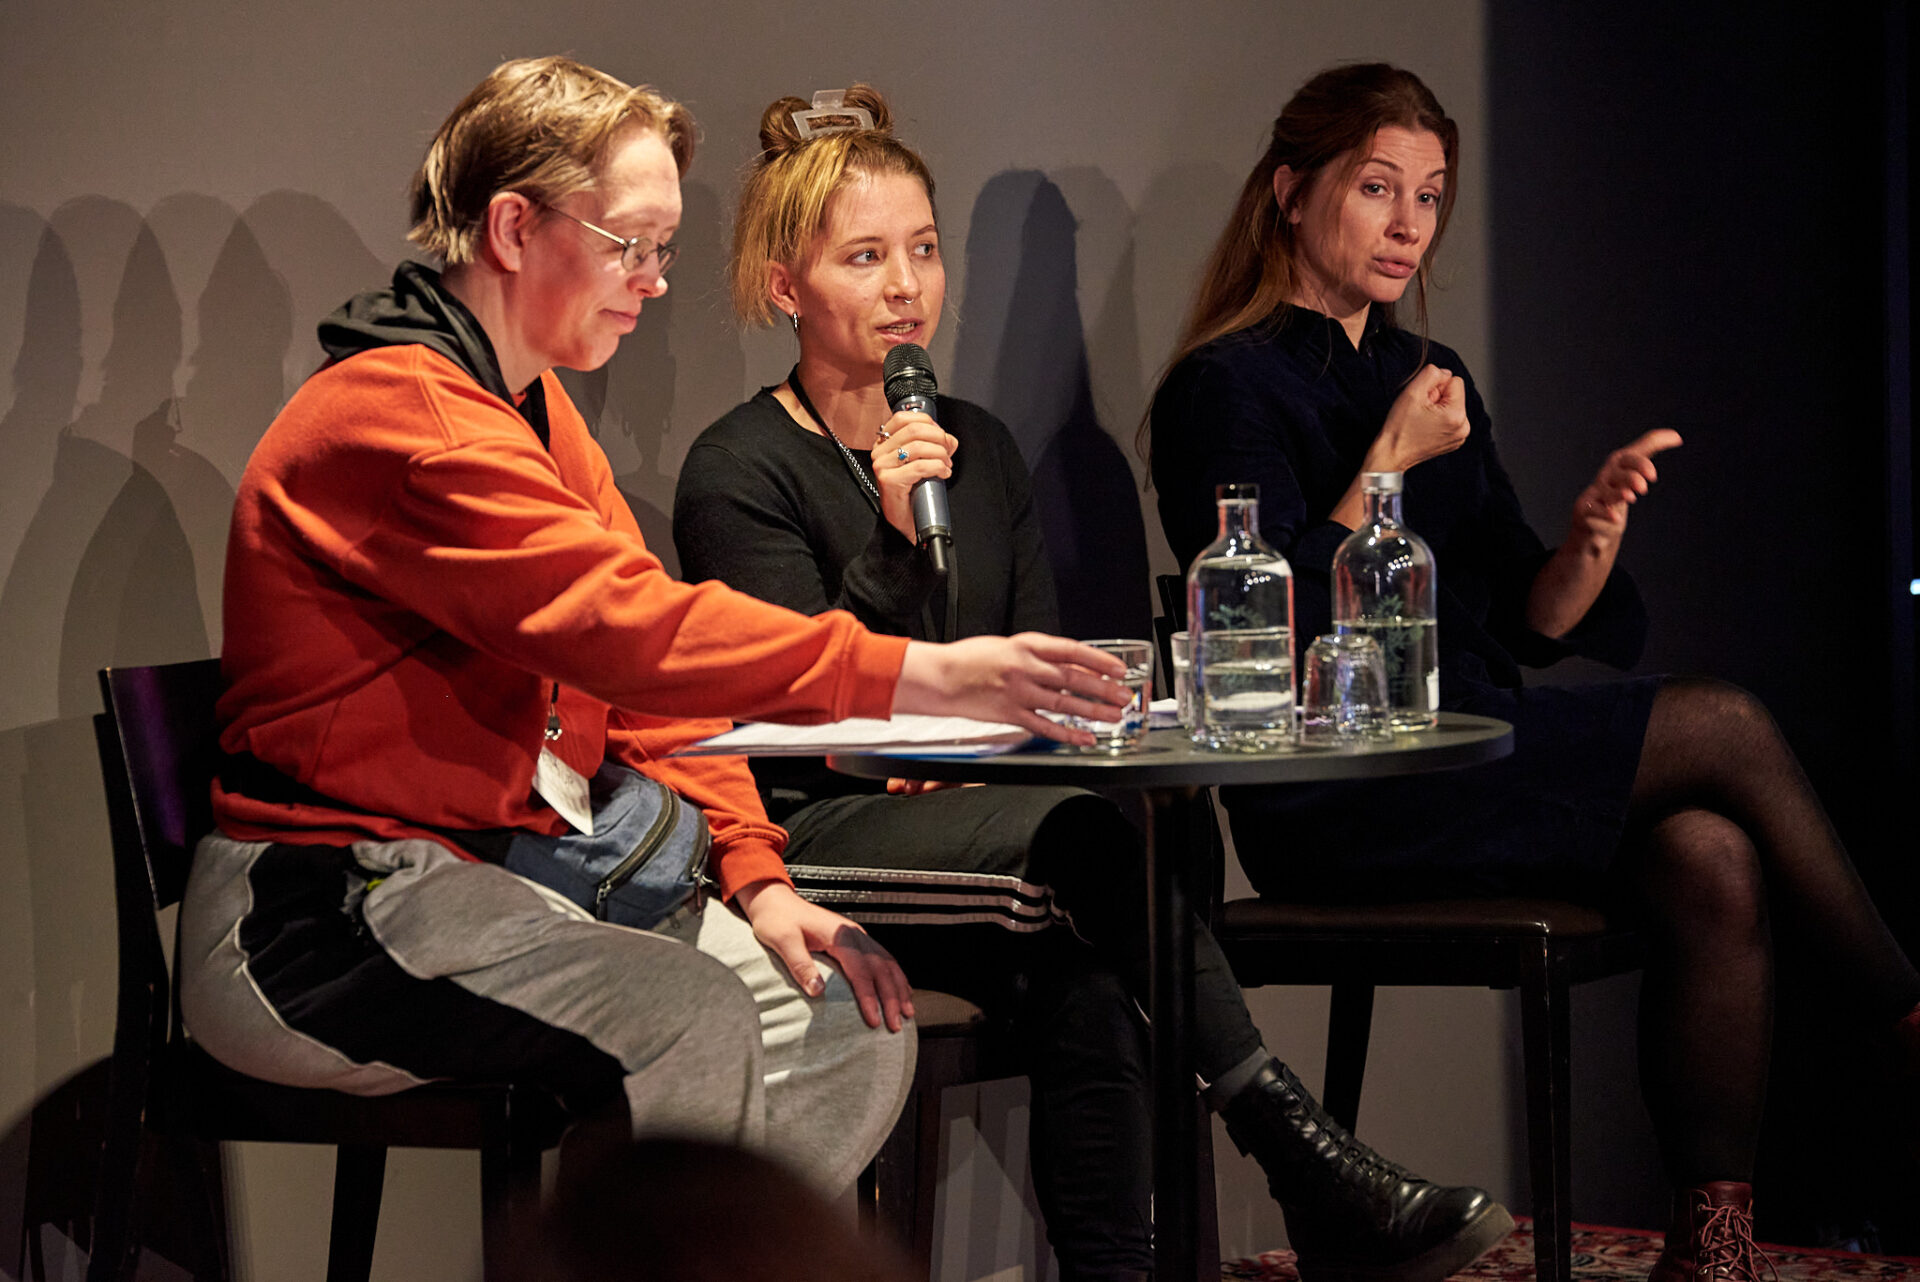 Friederike Jaglitz, Simone Burckhardt und Sarah Verena Bockers sitzen an einem runden Tisch auf dem Podium. Auf dem Tisch stehen zwei Glasflaschen mit Wasser, Friederike Jaglitz greift nach einem Wasserglas.